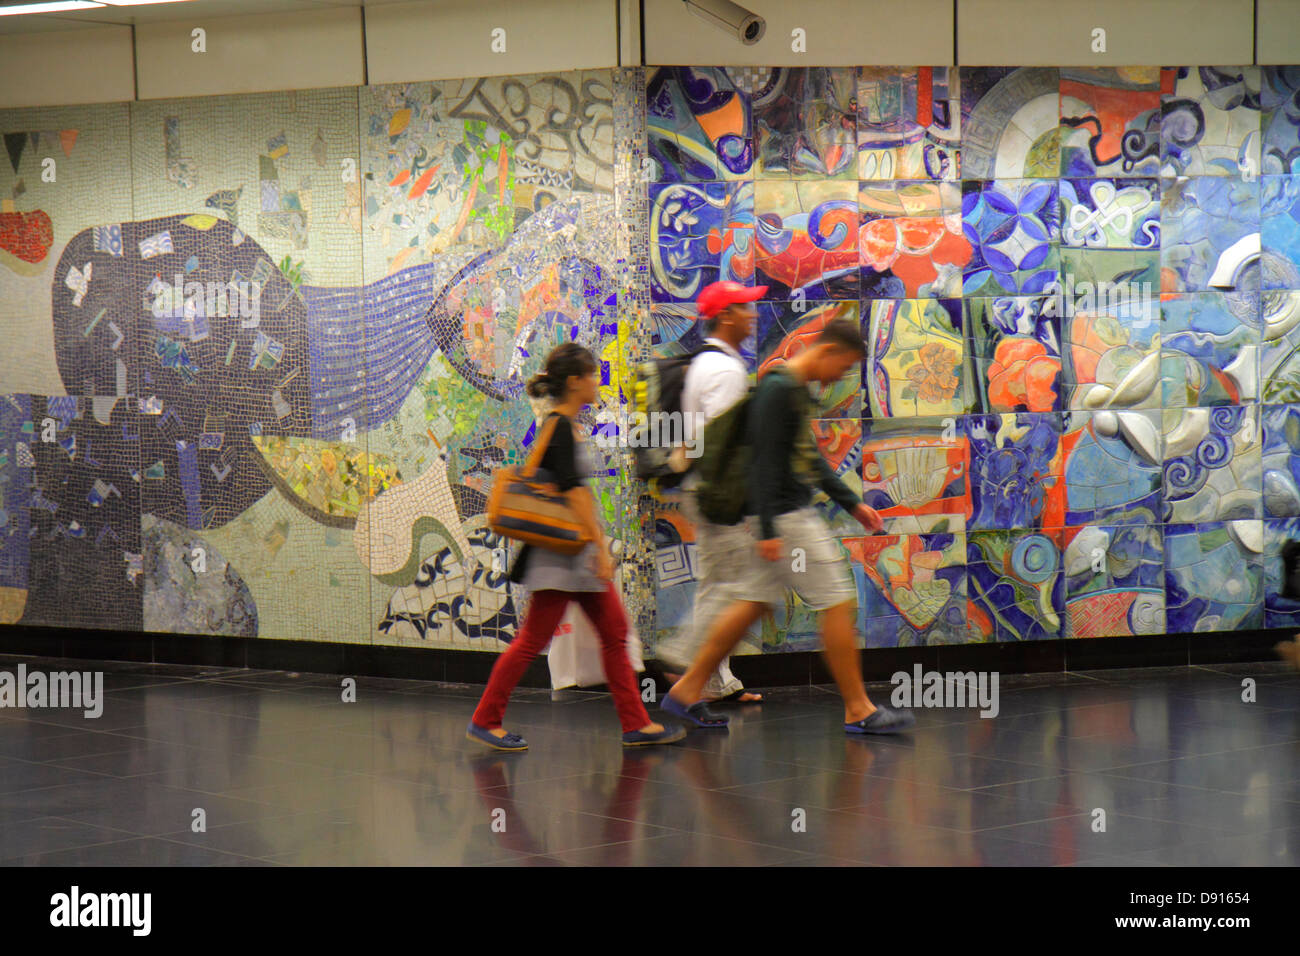 Singapour Dhoby Ghaut MRT Station, métro, navetteurs, motards, homme asiatique hommes hommes, femme femmes, murale, céramique carreaux, art public, Sing13052042 Banque D'Images